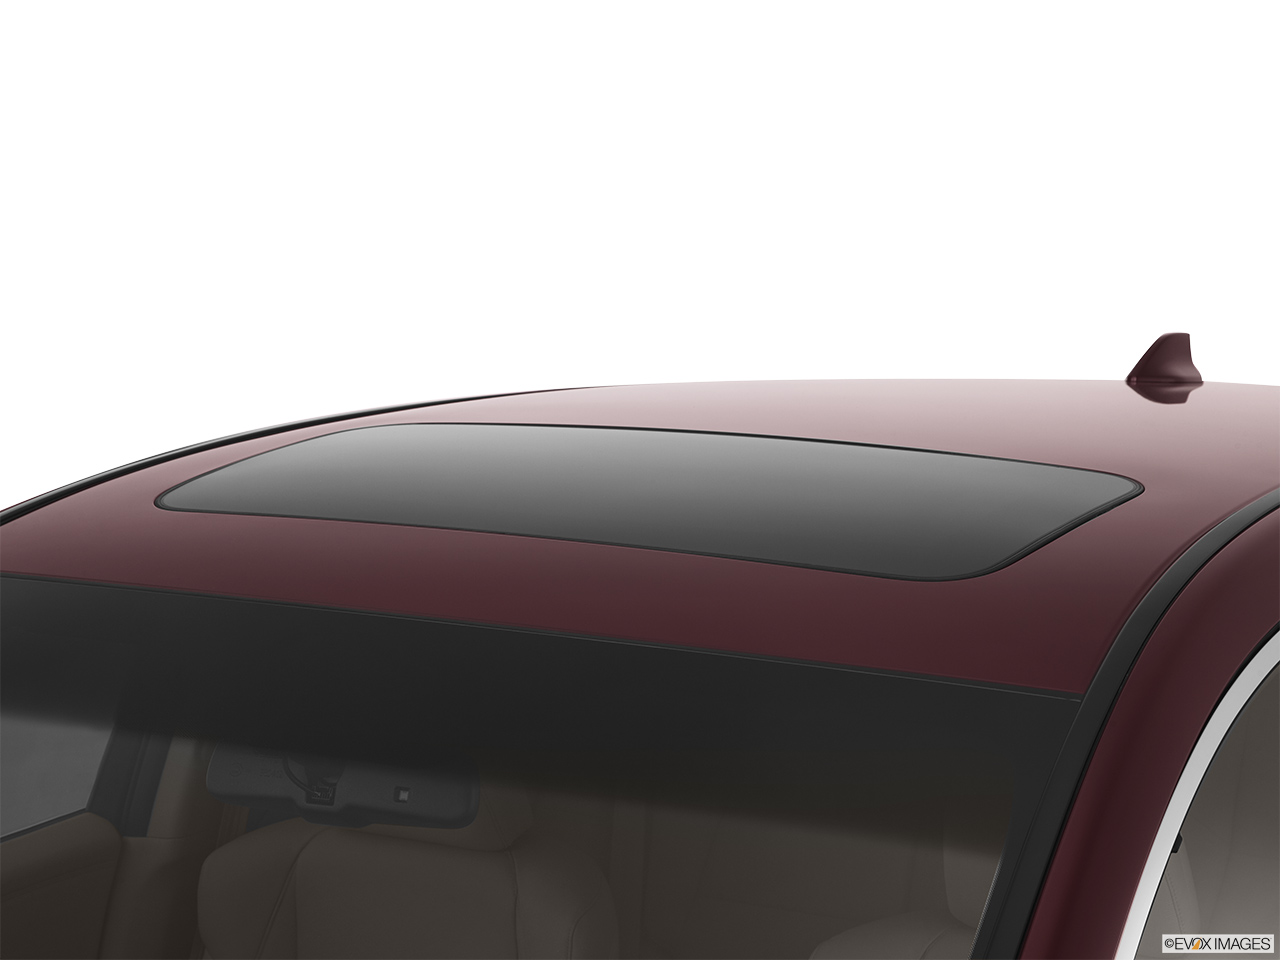 2013 Acura RDX AWD Sunroof/moonroof. 